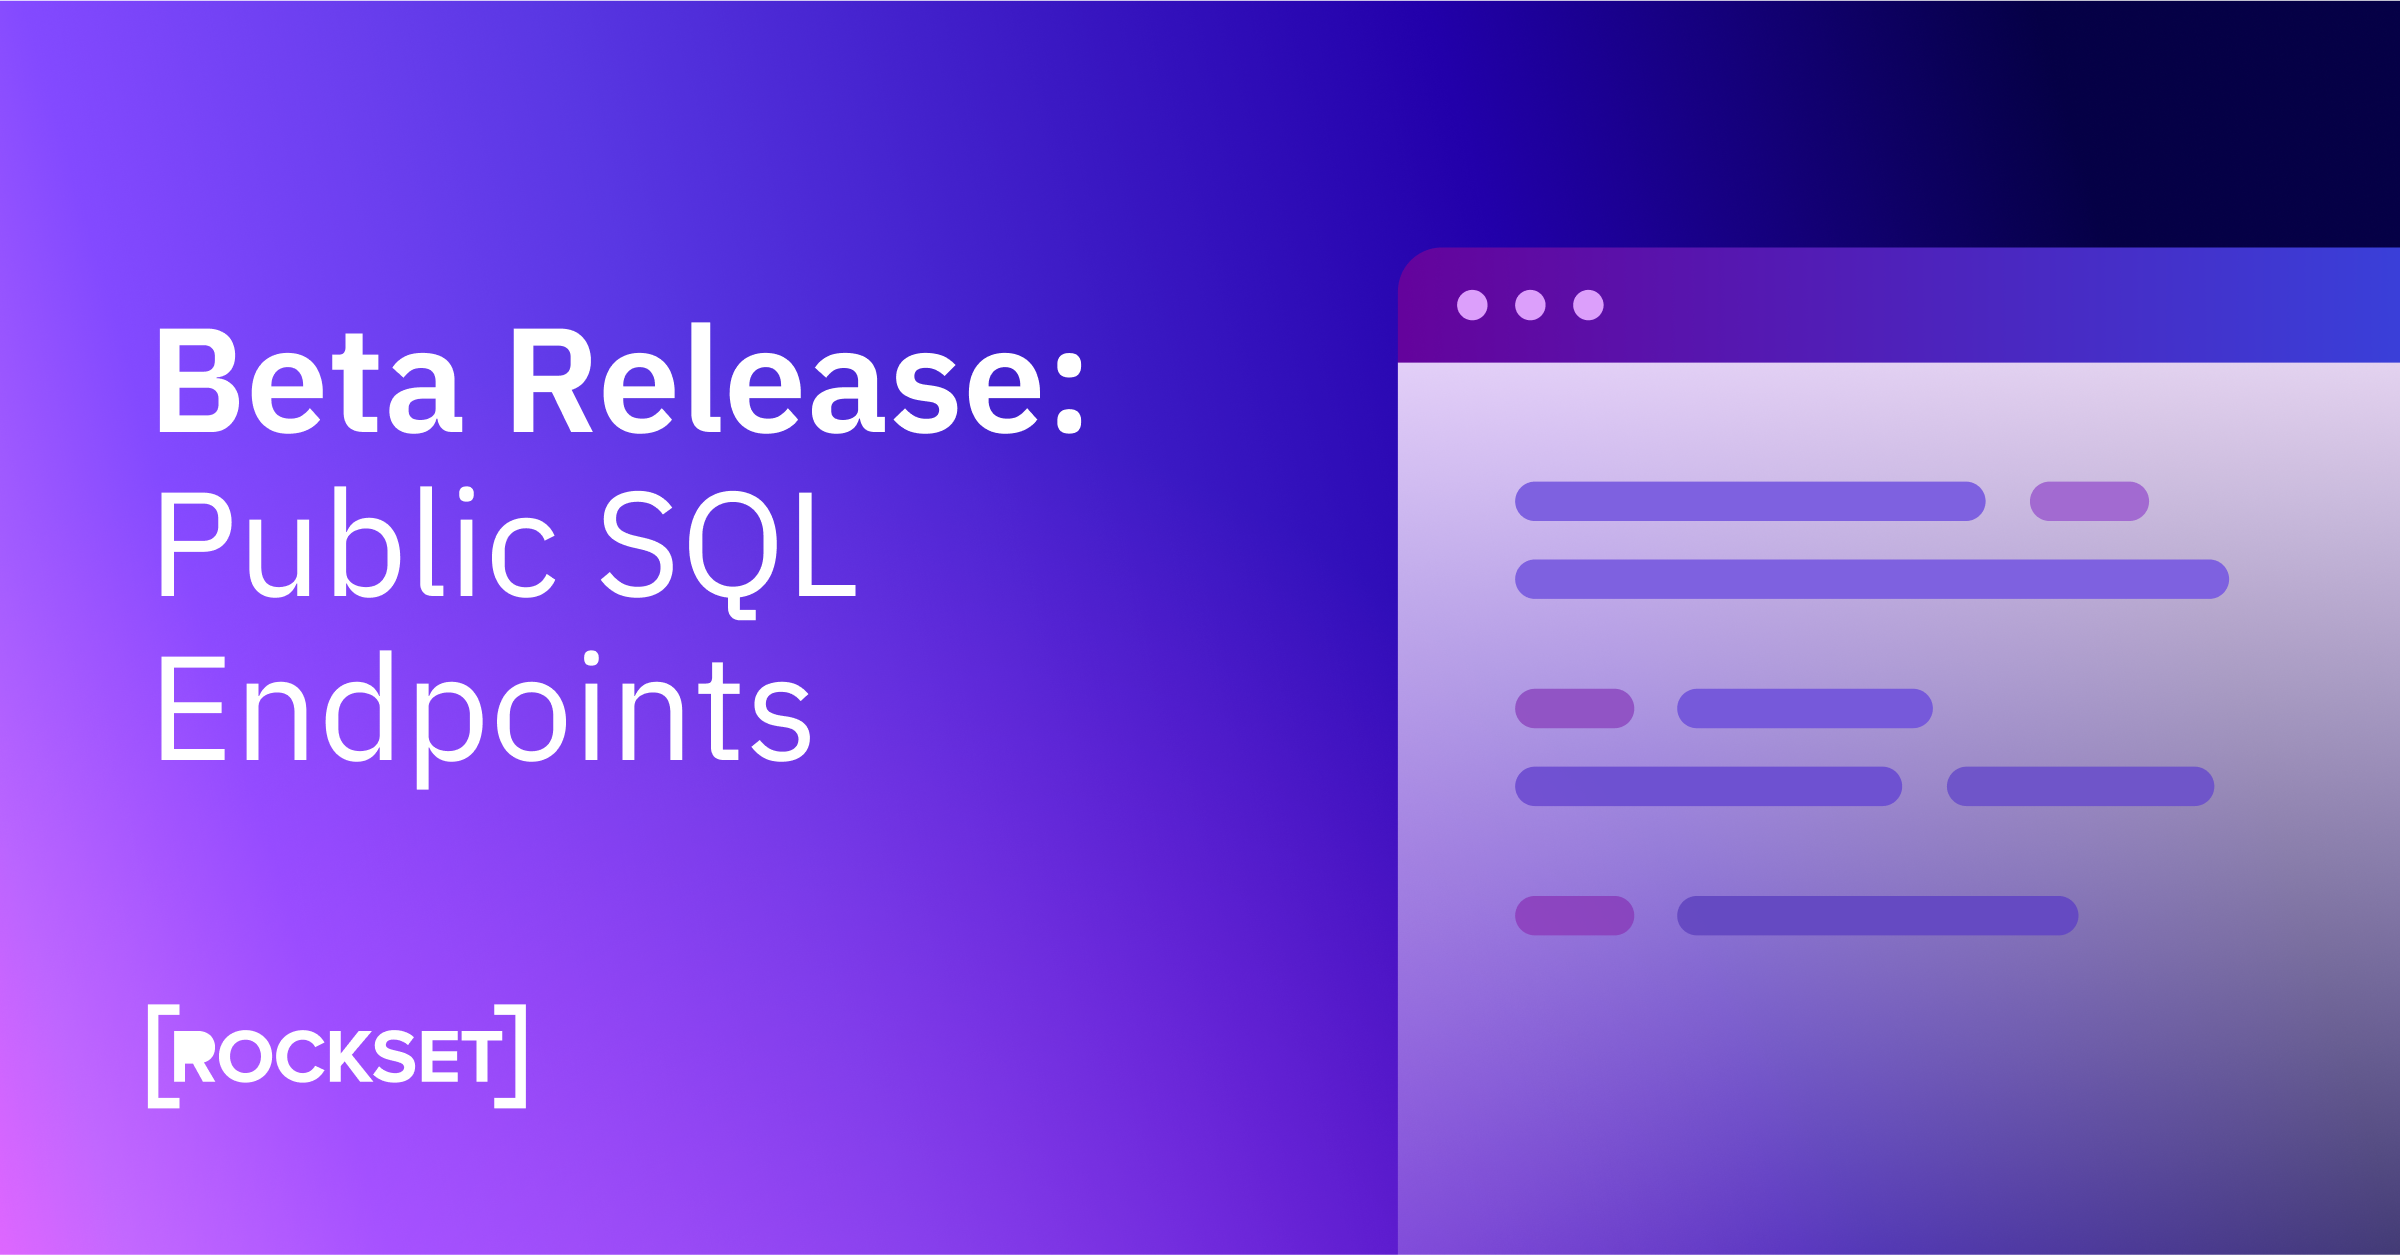 Public SQL Endpoints in Rockset